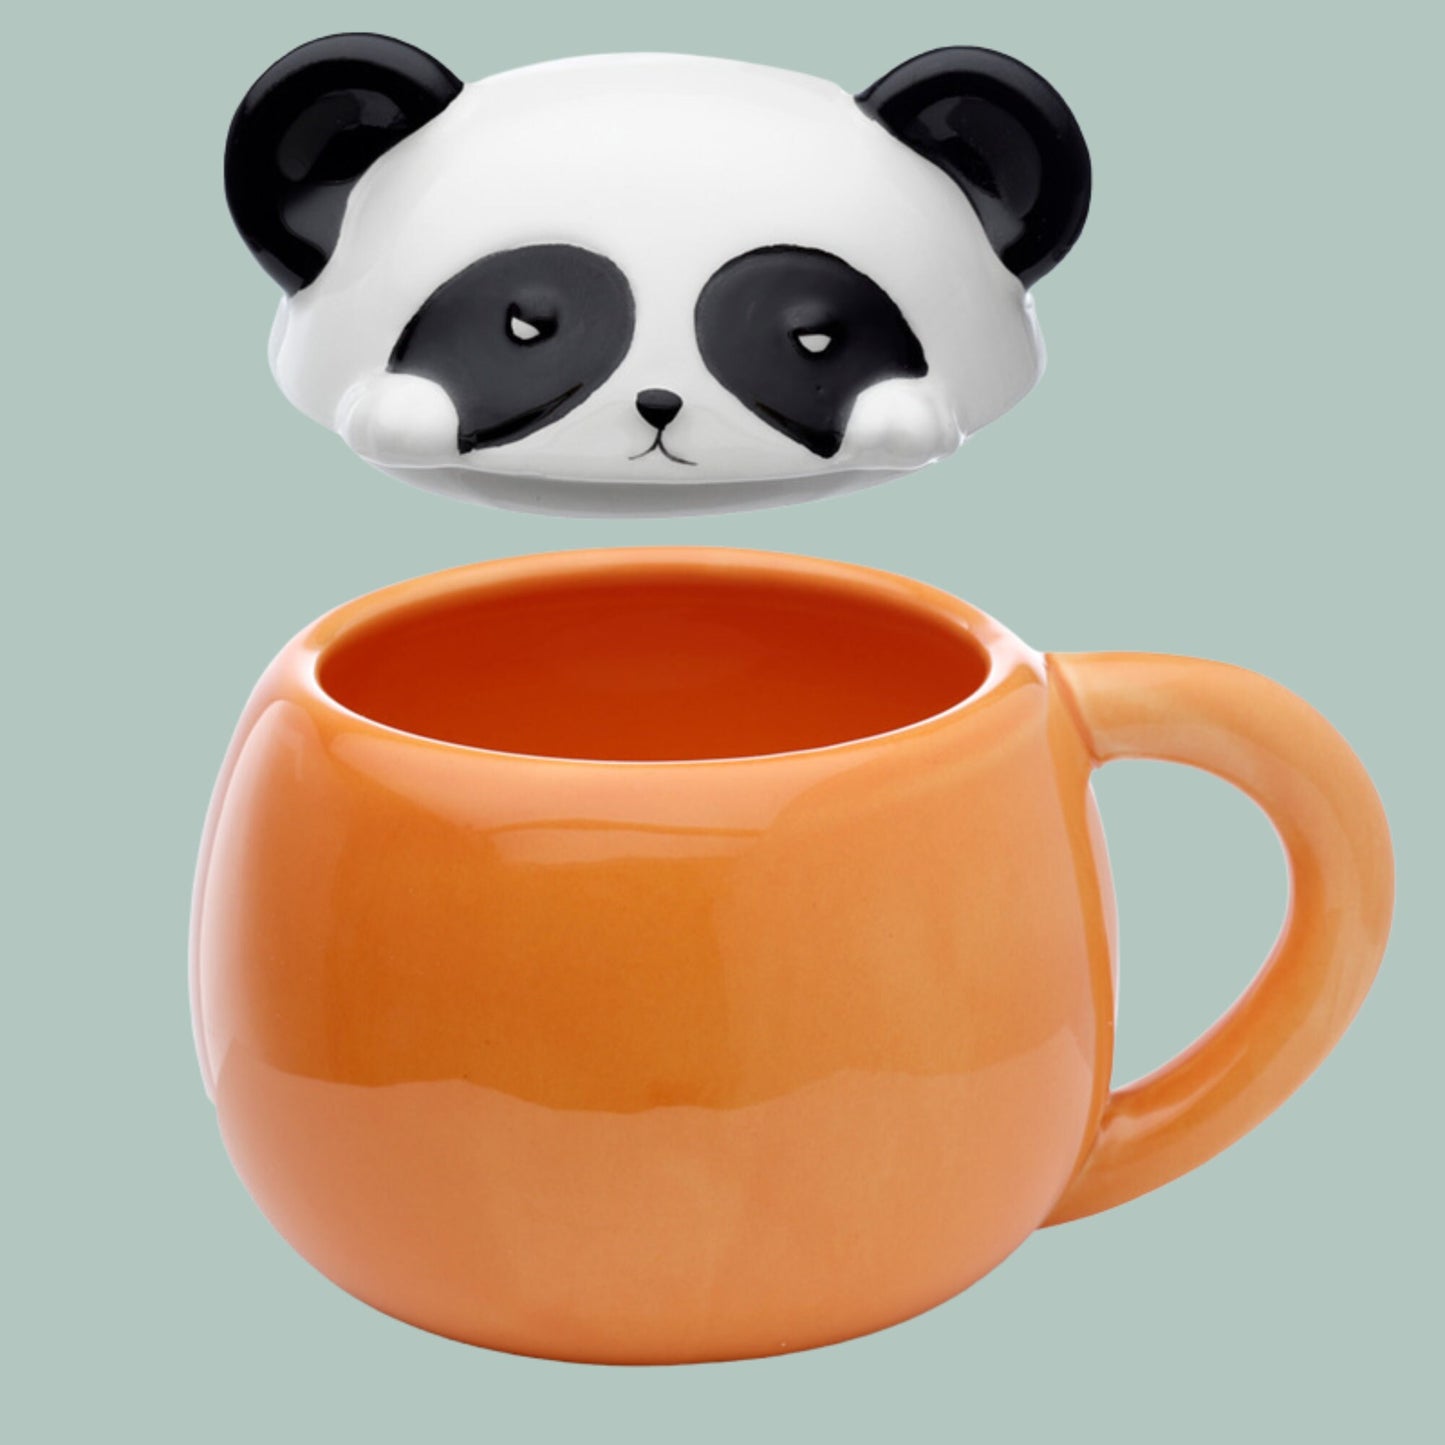 Cute Panda Lidded Mug Ceramic Lidded Panda Mug Animal Mug Panda Lover Gift Mug Nature Present Fun Peeping Panda Coffee Cup Cute Special Gift